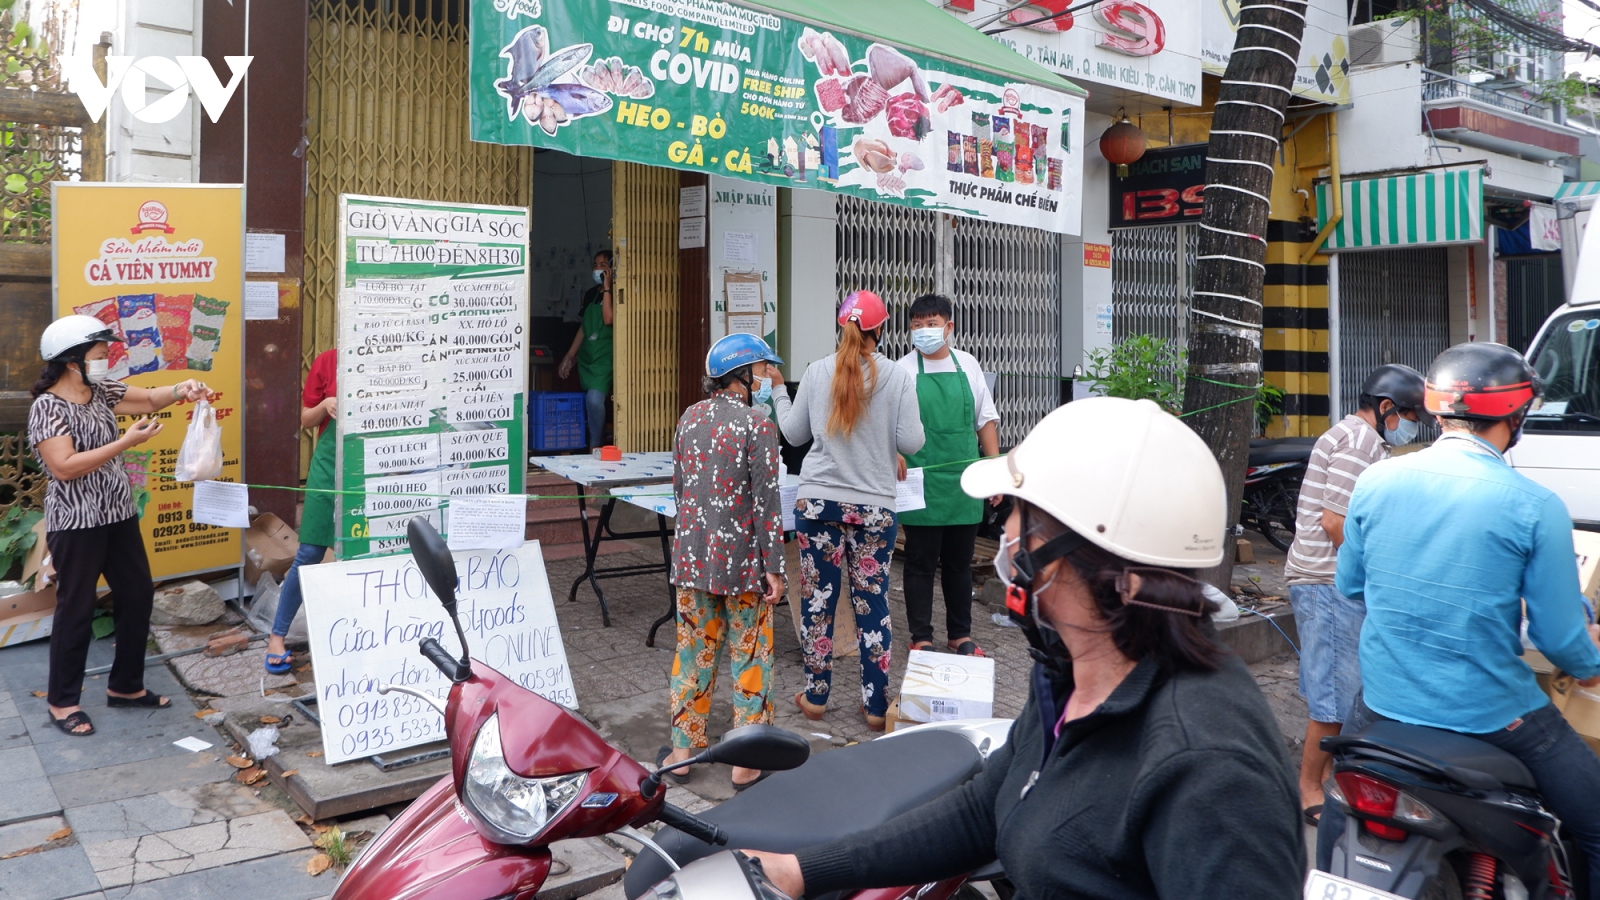 Cần Thơ dừng hoạt động chợ, người dân xếp hàng chờ mua thực phẩm ở cửa hàng tiện ích